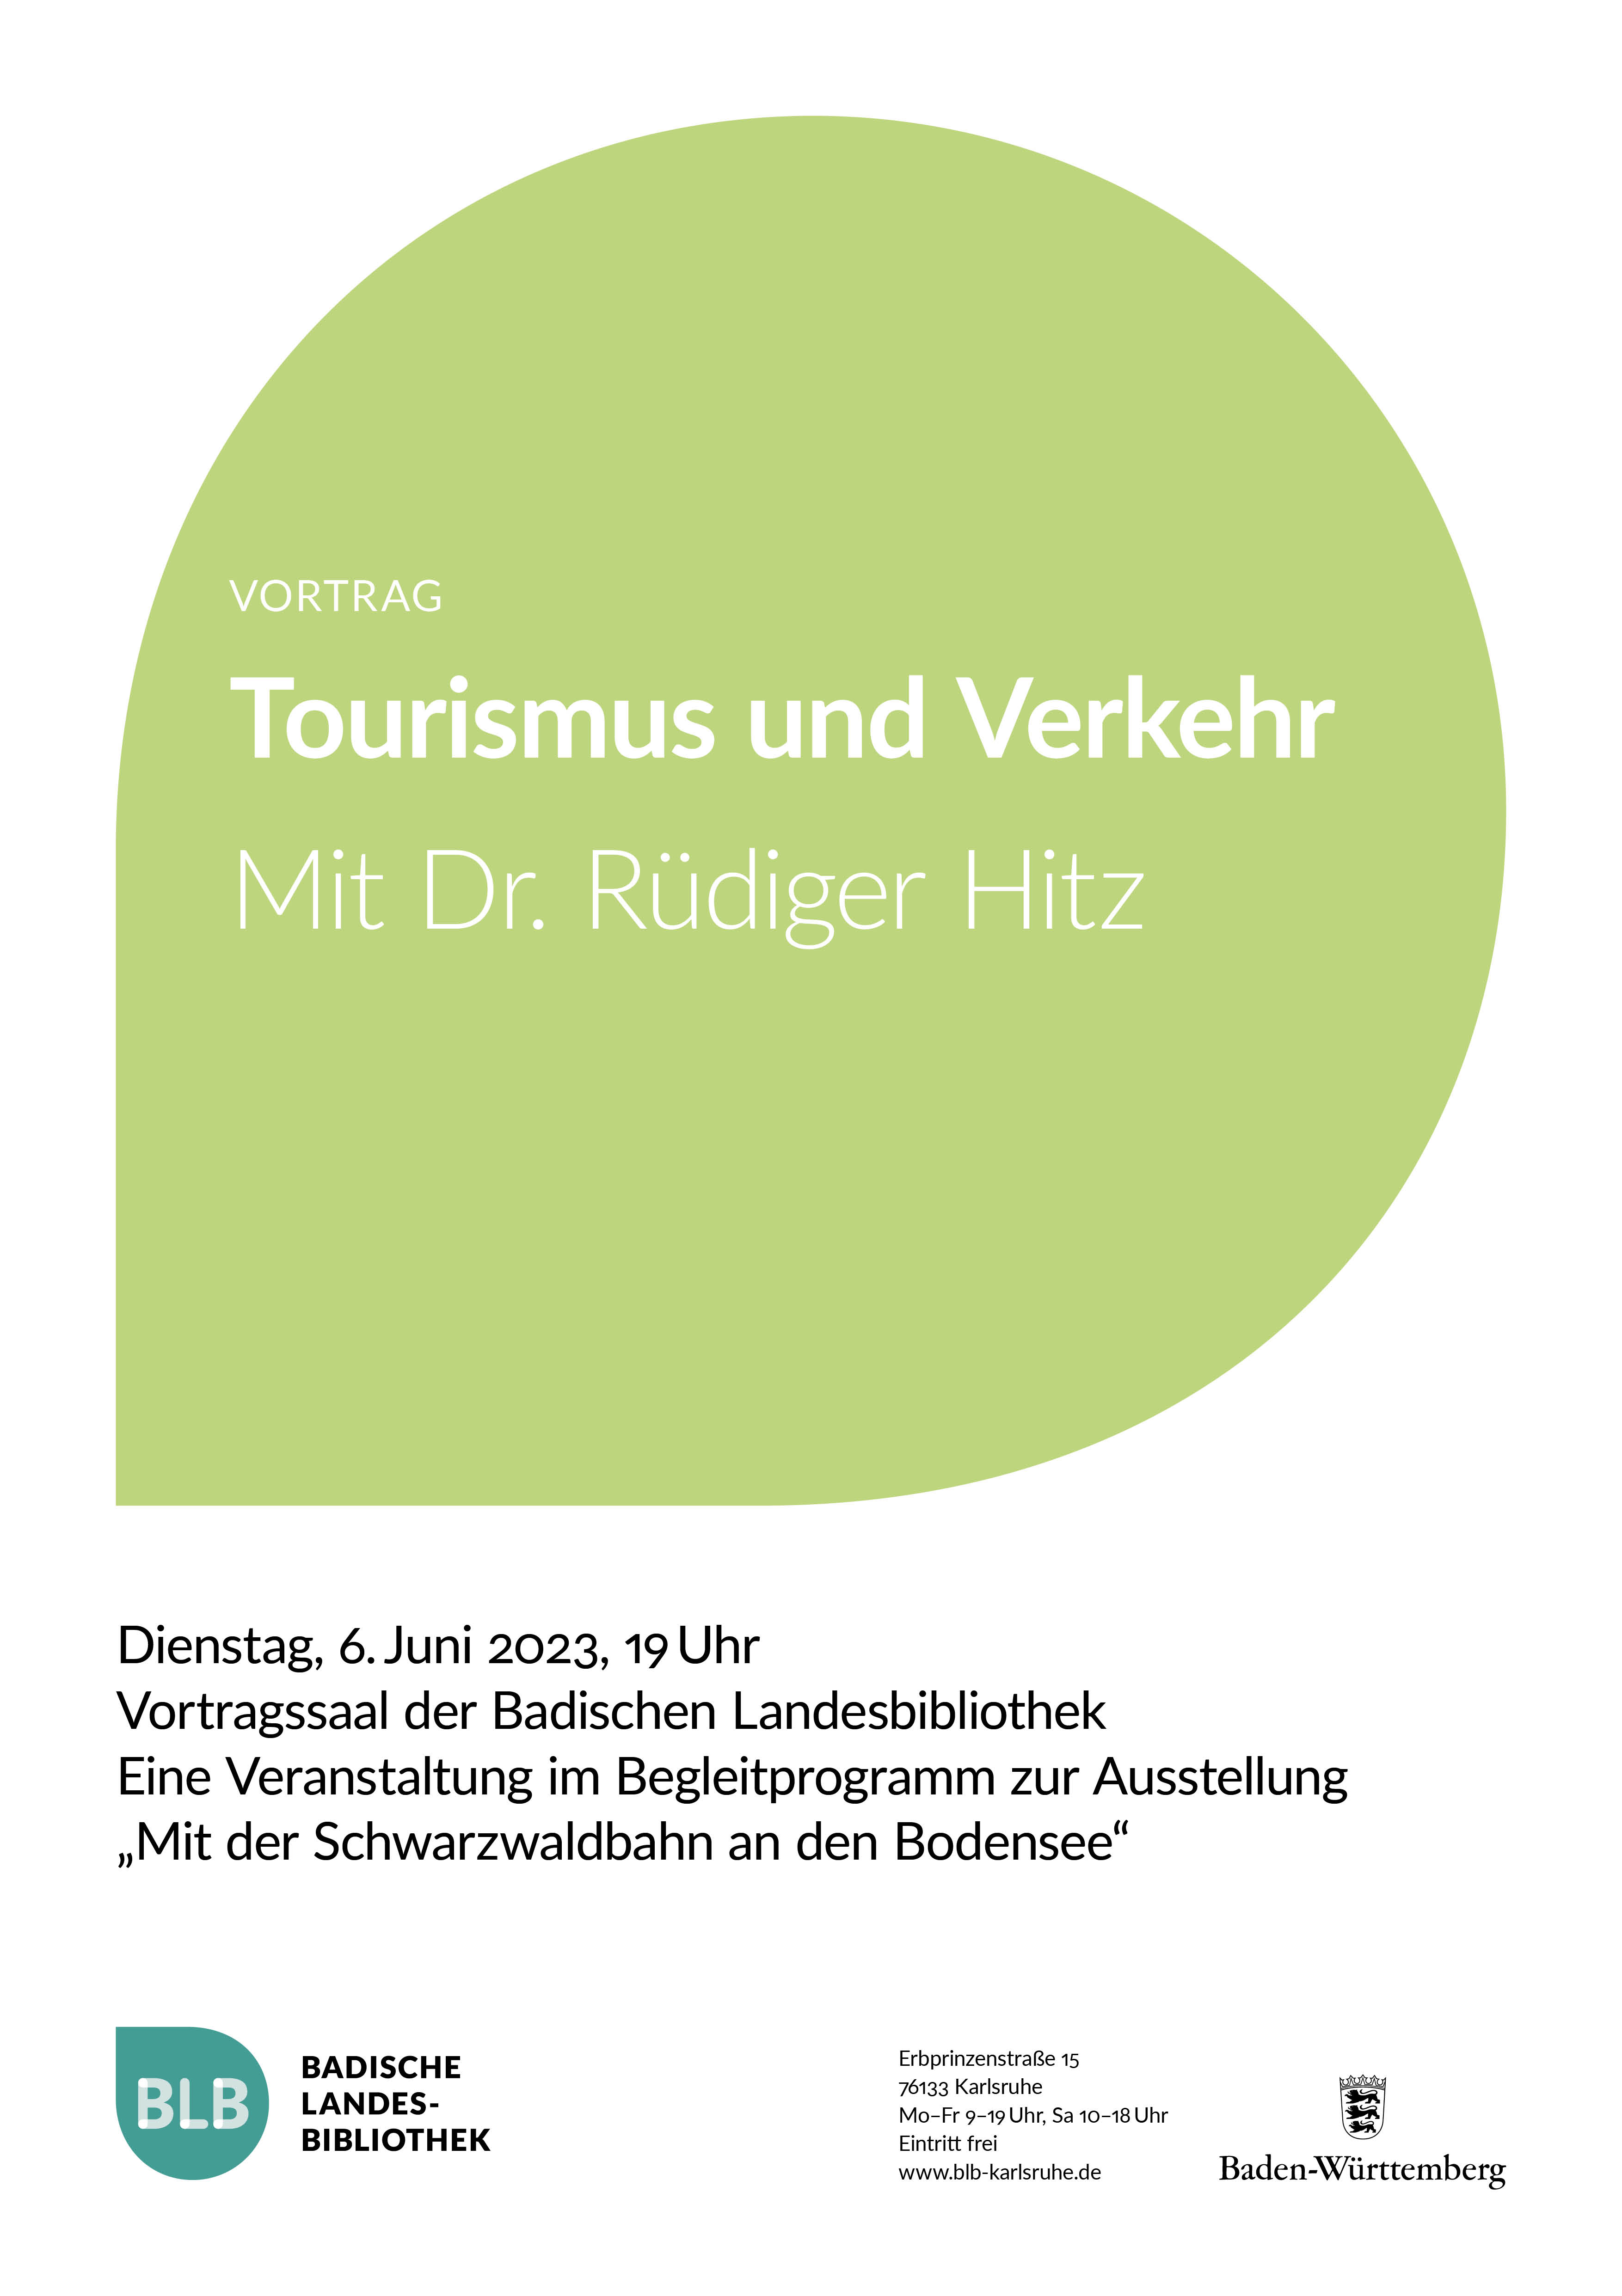 Zu sehen ist ein grünes Monogon mit der Aufschrift "Tourismus und Verkehr". Der Vortrag mit Dr. Rüdiger Hitz findet am Dienstag, dem 6. Juni 2023 um 19 Uhr statt. 